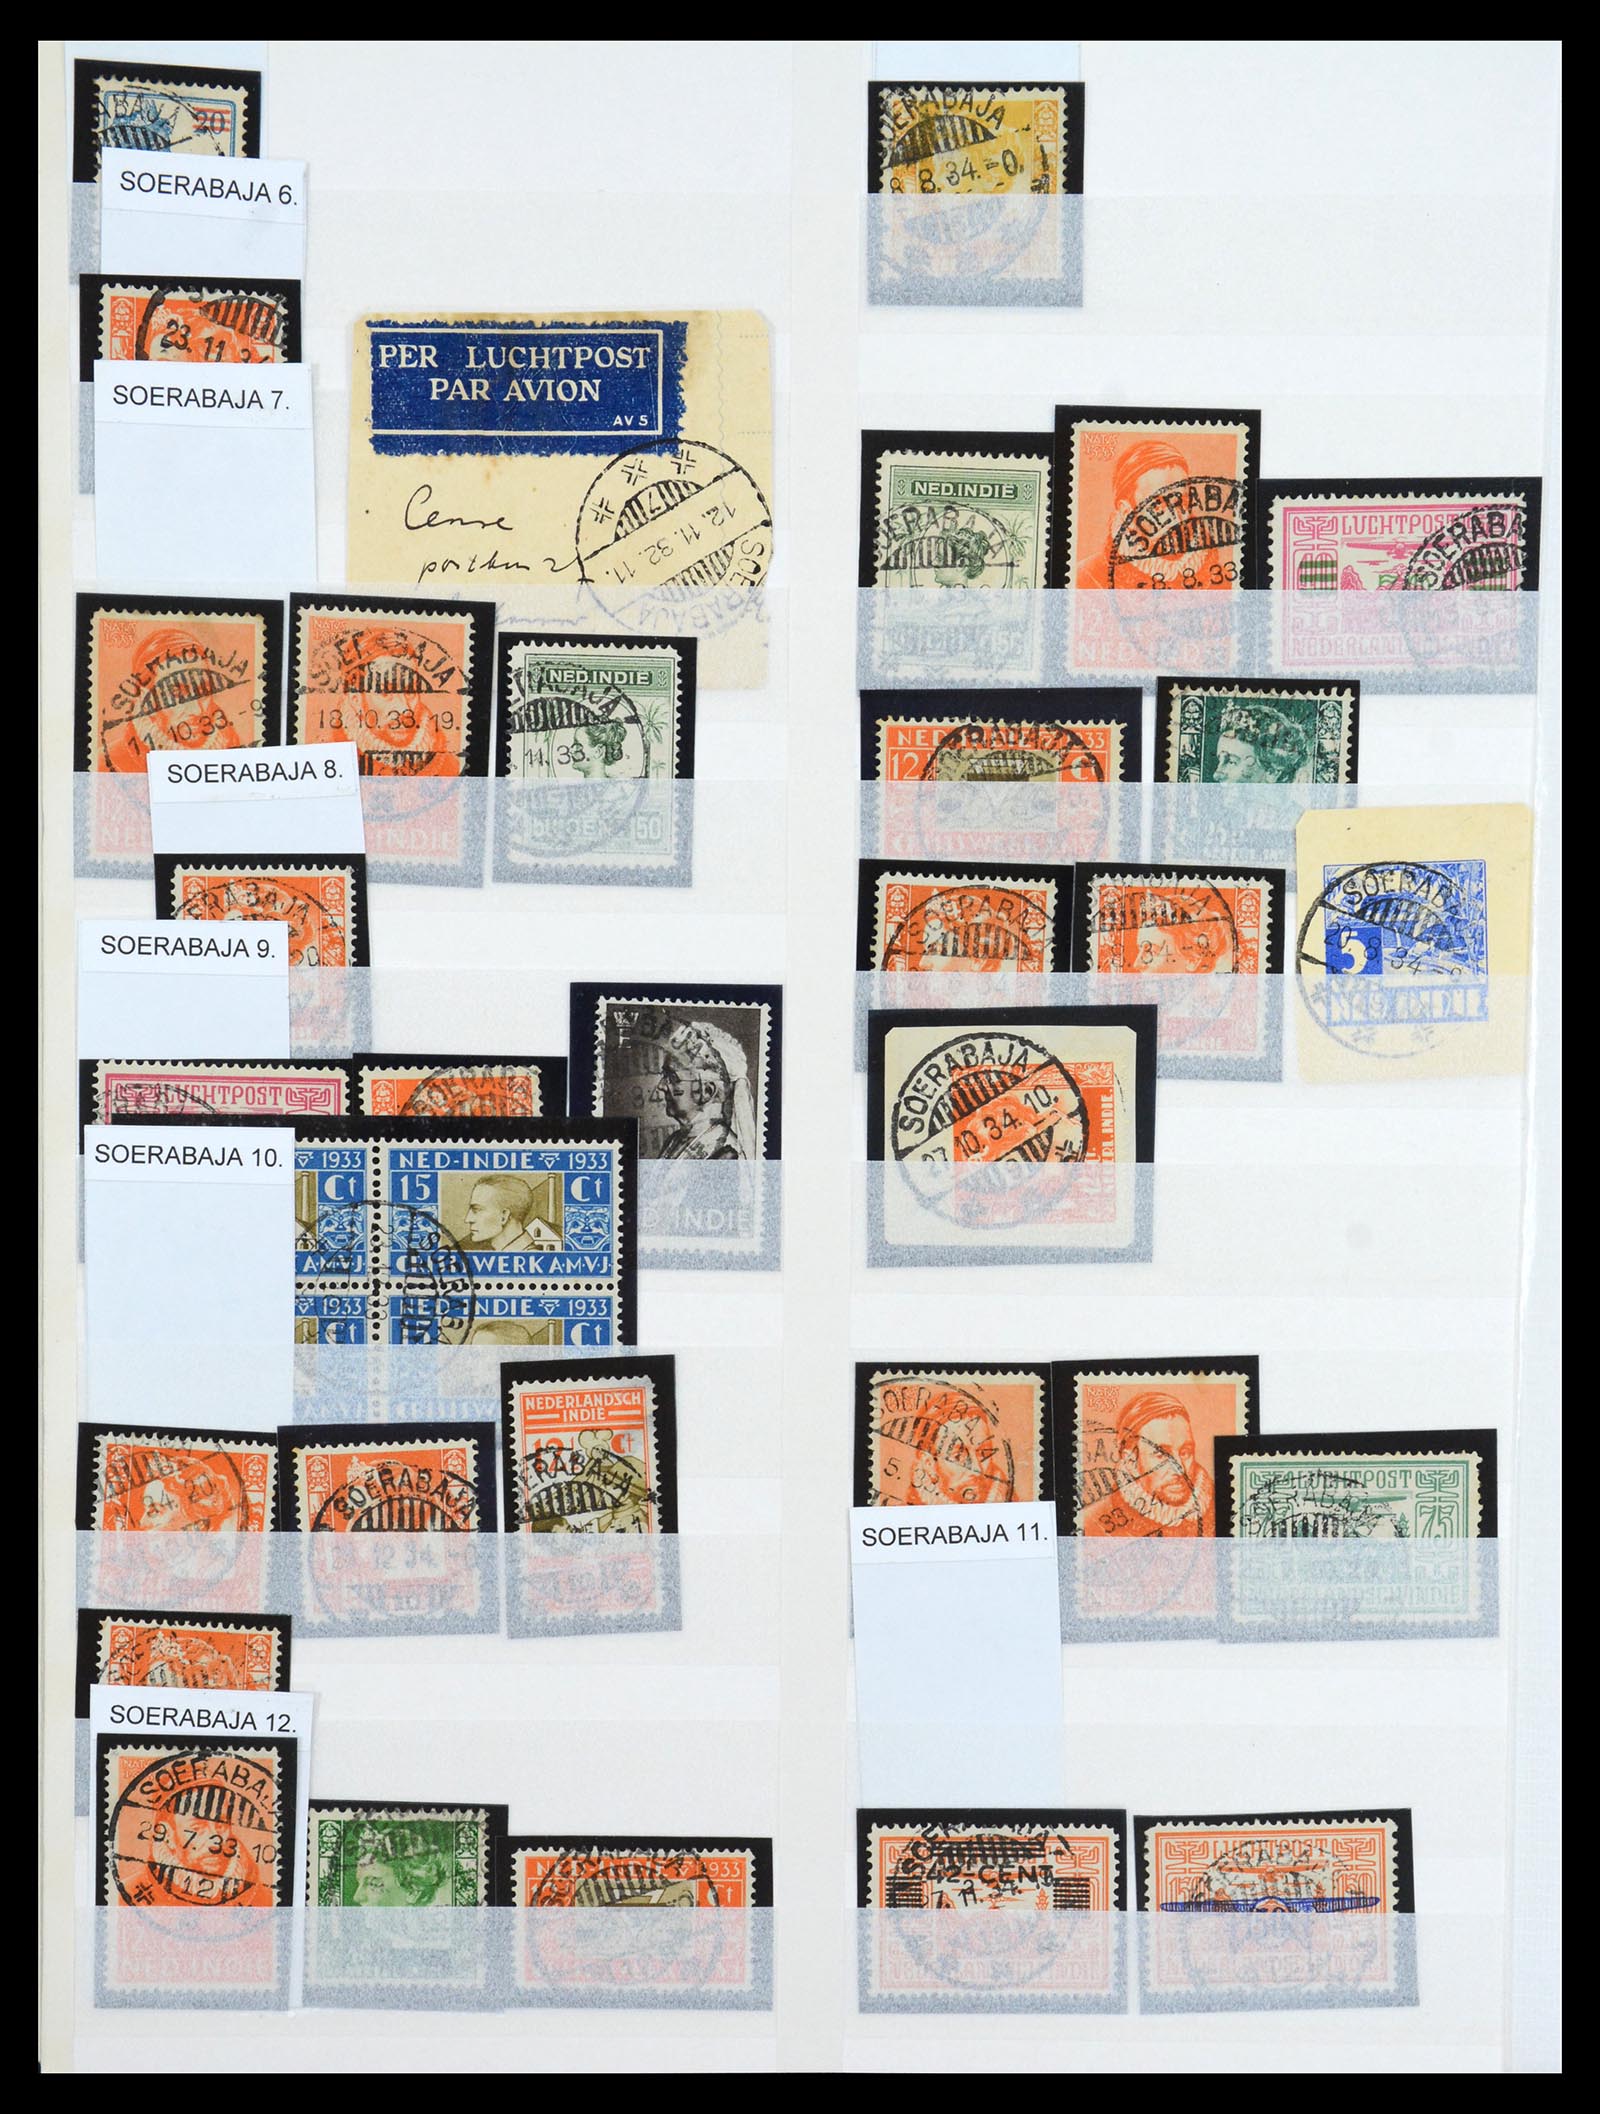 36617 018 - Stamp collection 36617 Nederlands Indië stempels.